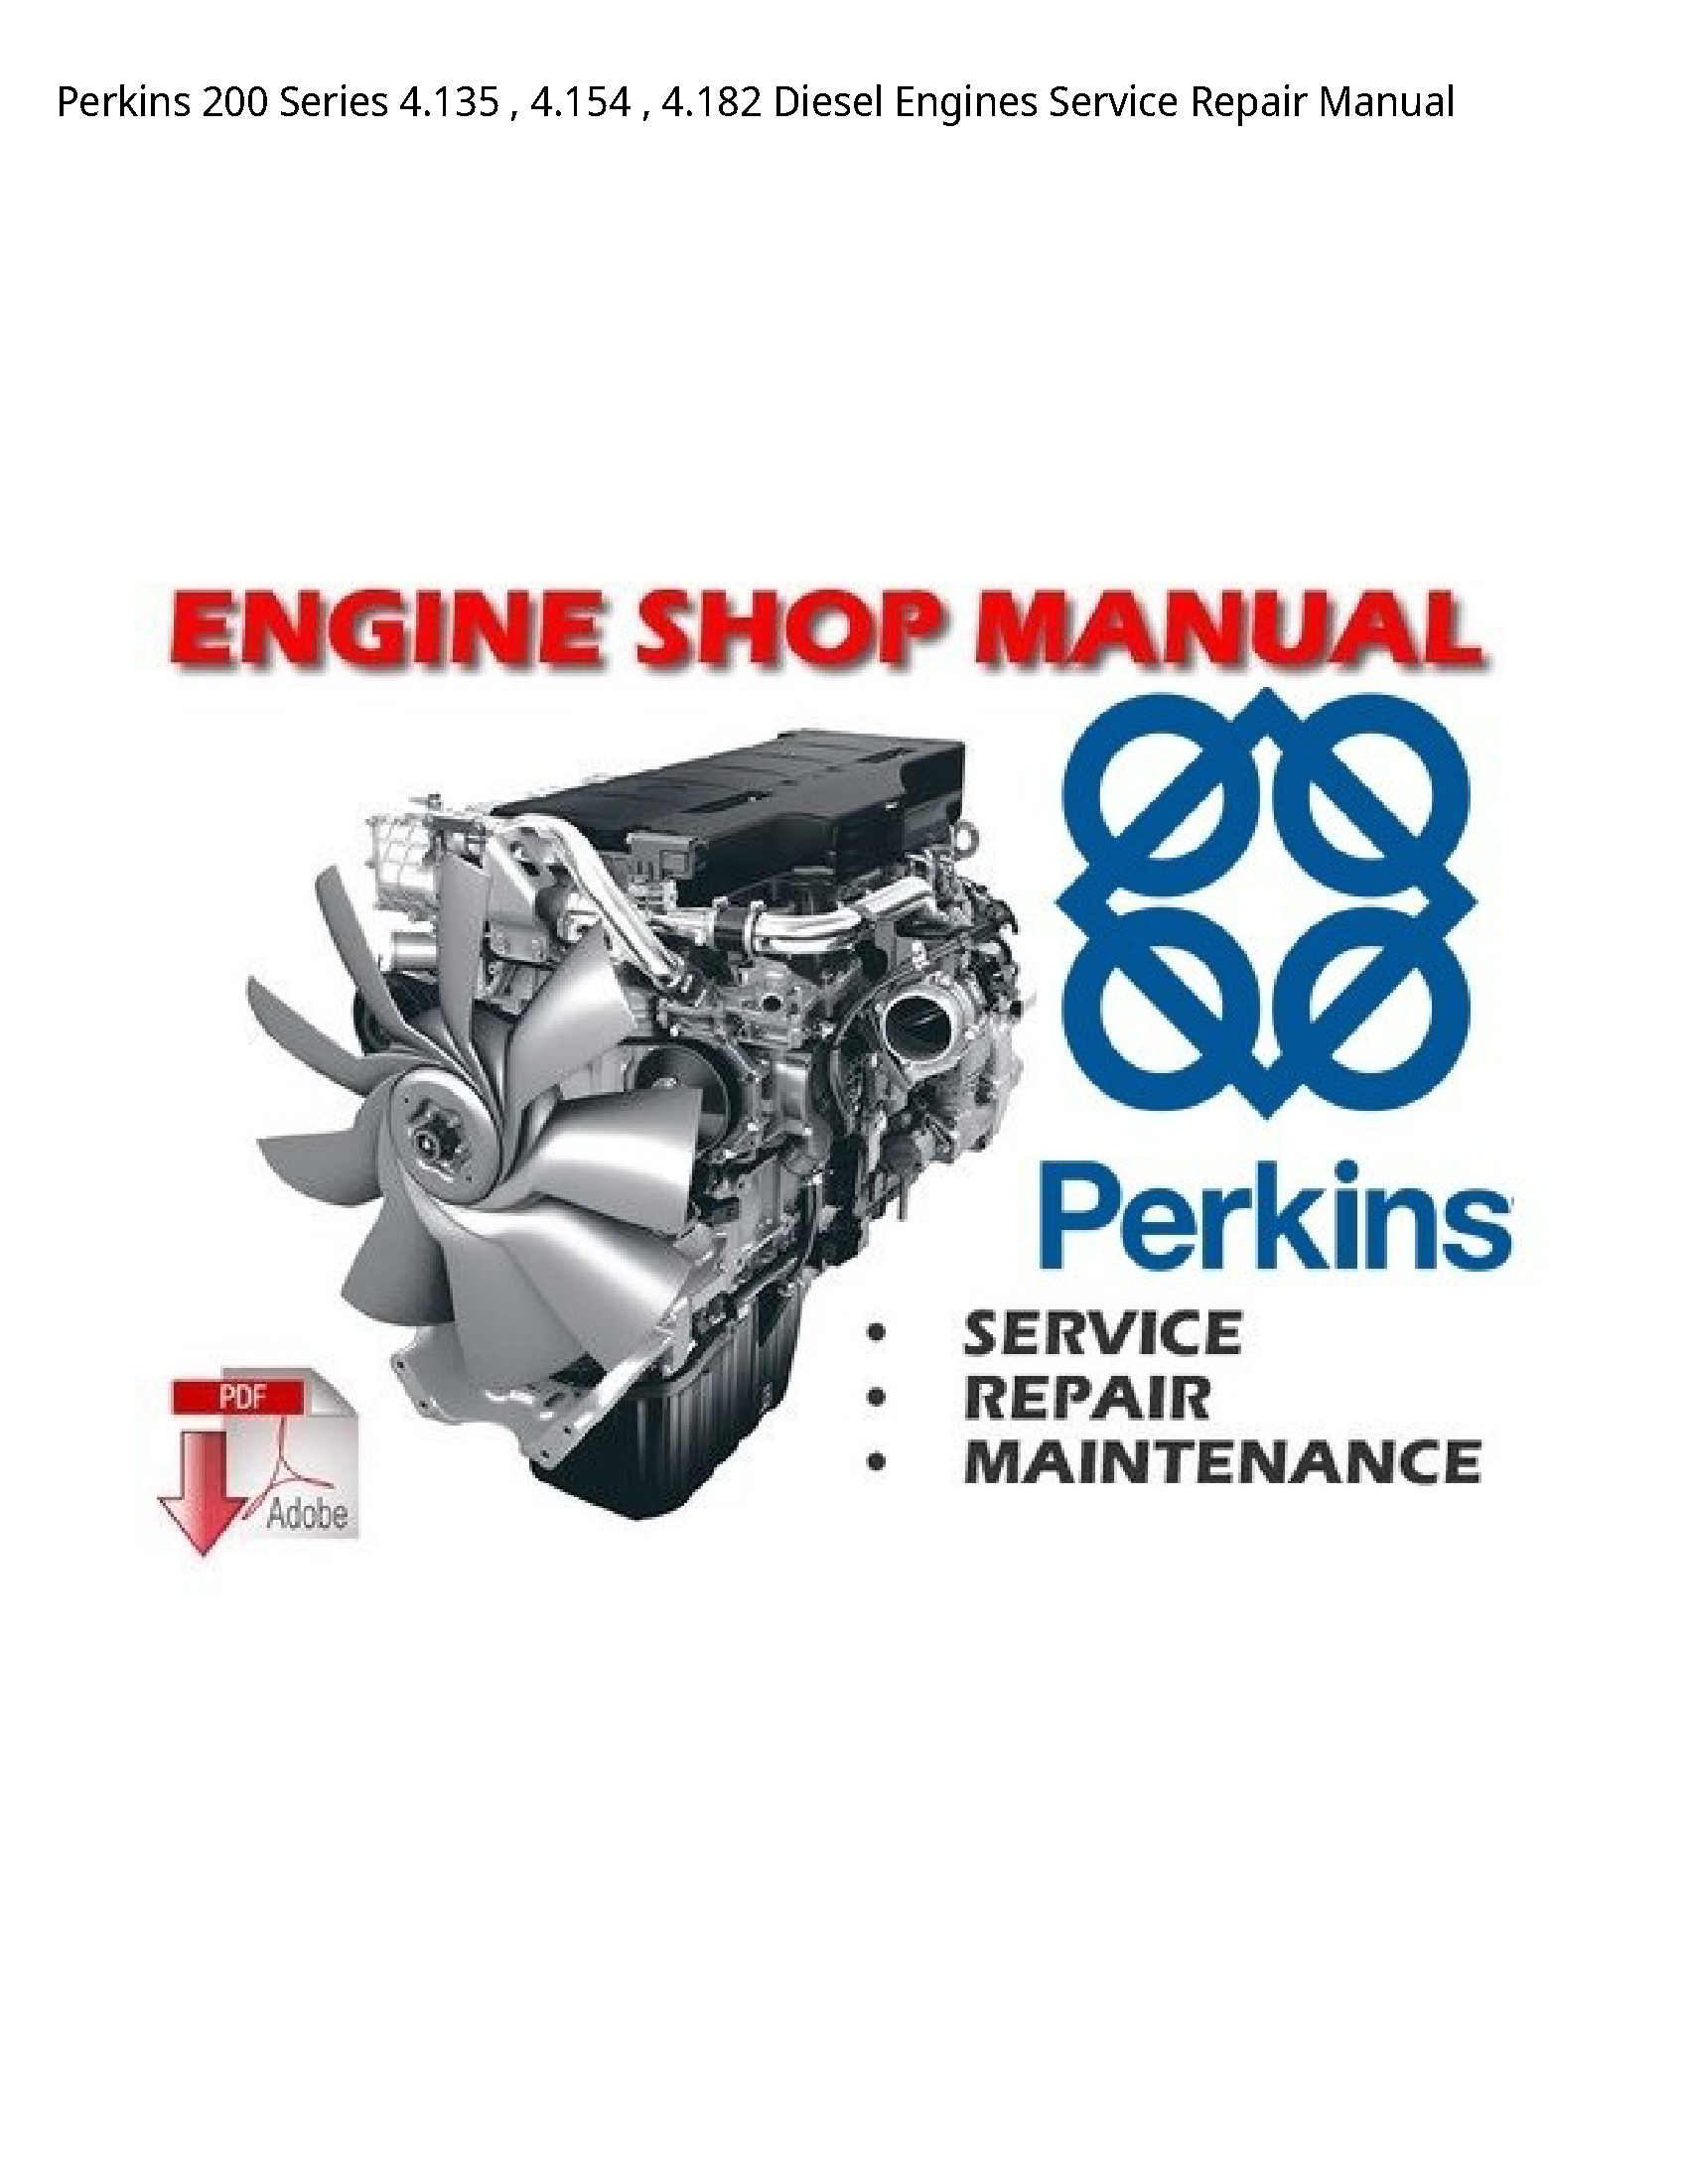 Perkins 200 Series Diesel Engines manual